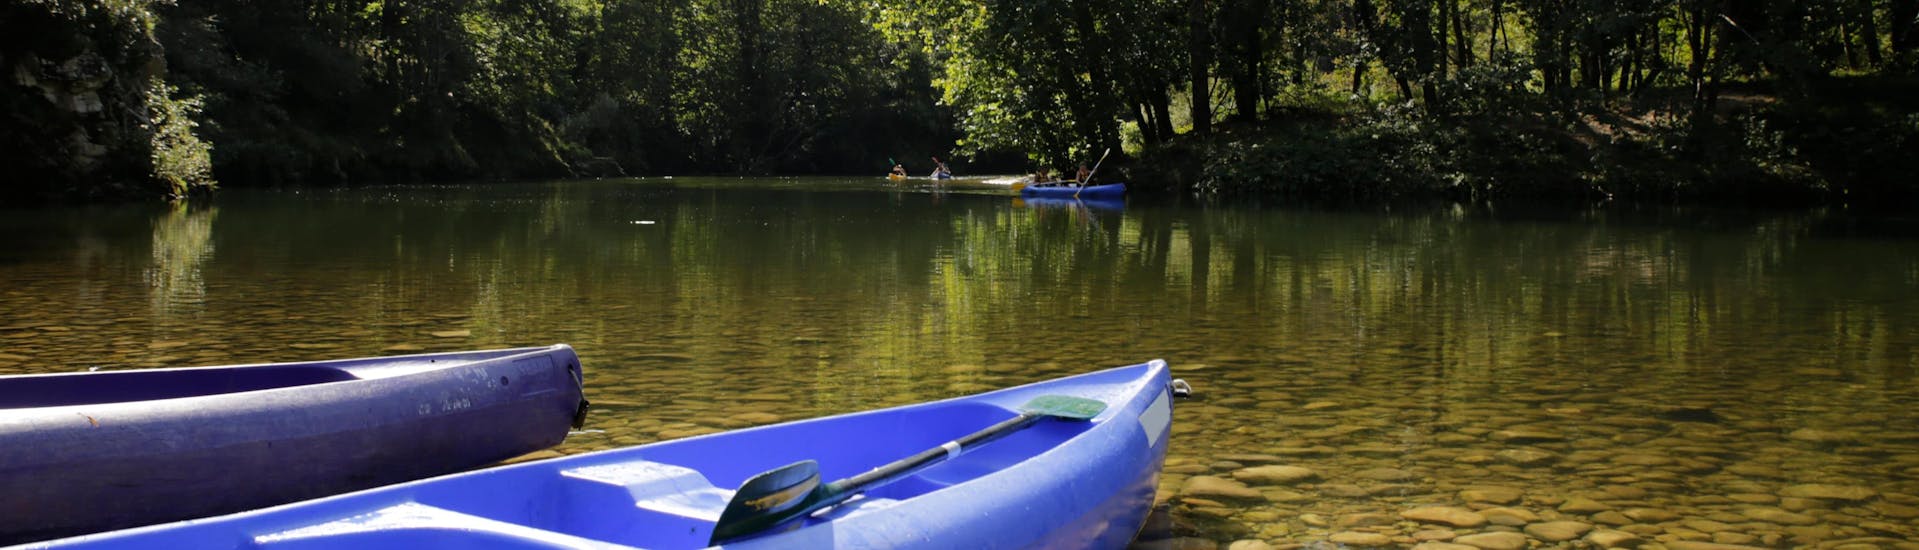 Aperçu de quelques canoës et kayaks sur la magnifique rivière Sella, que vous pouvez découvrir lors d'une excursion en canoë ou en kayak à Arriondas, en Espagne.